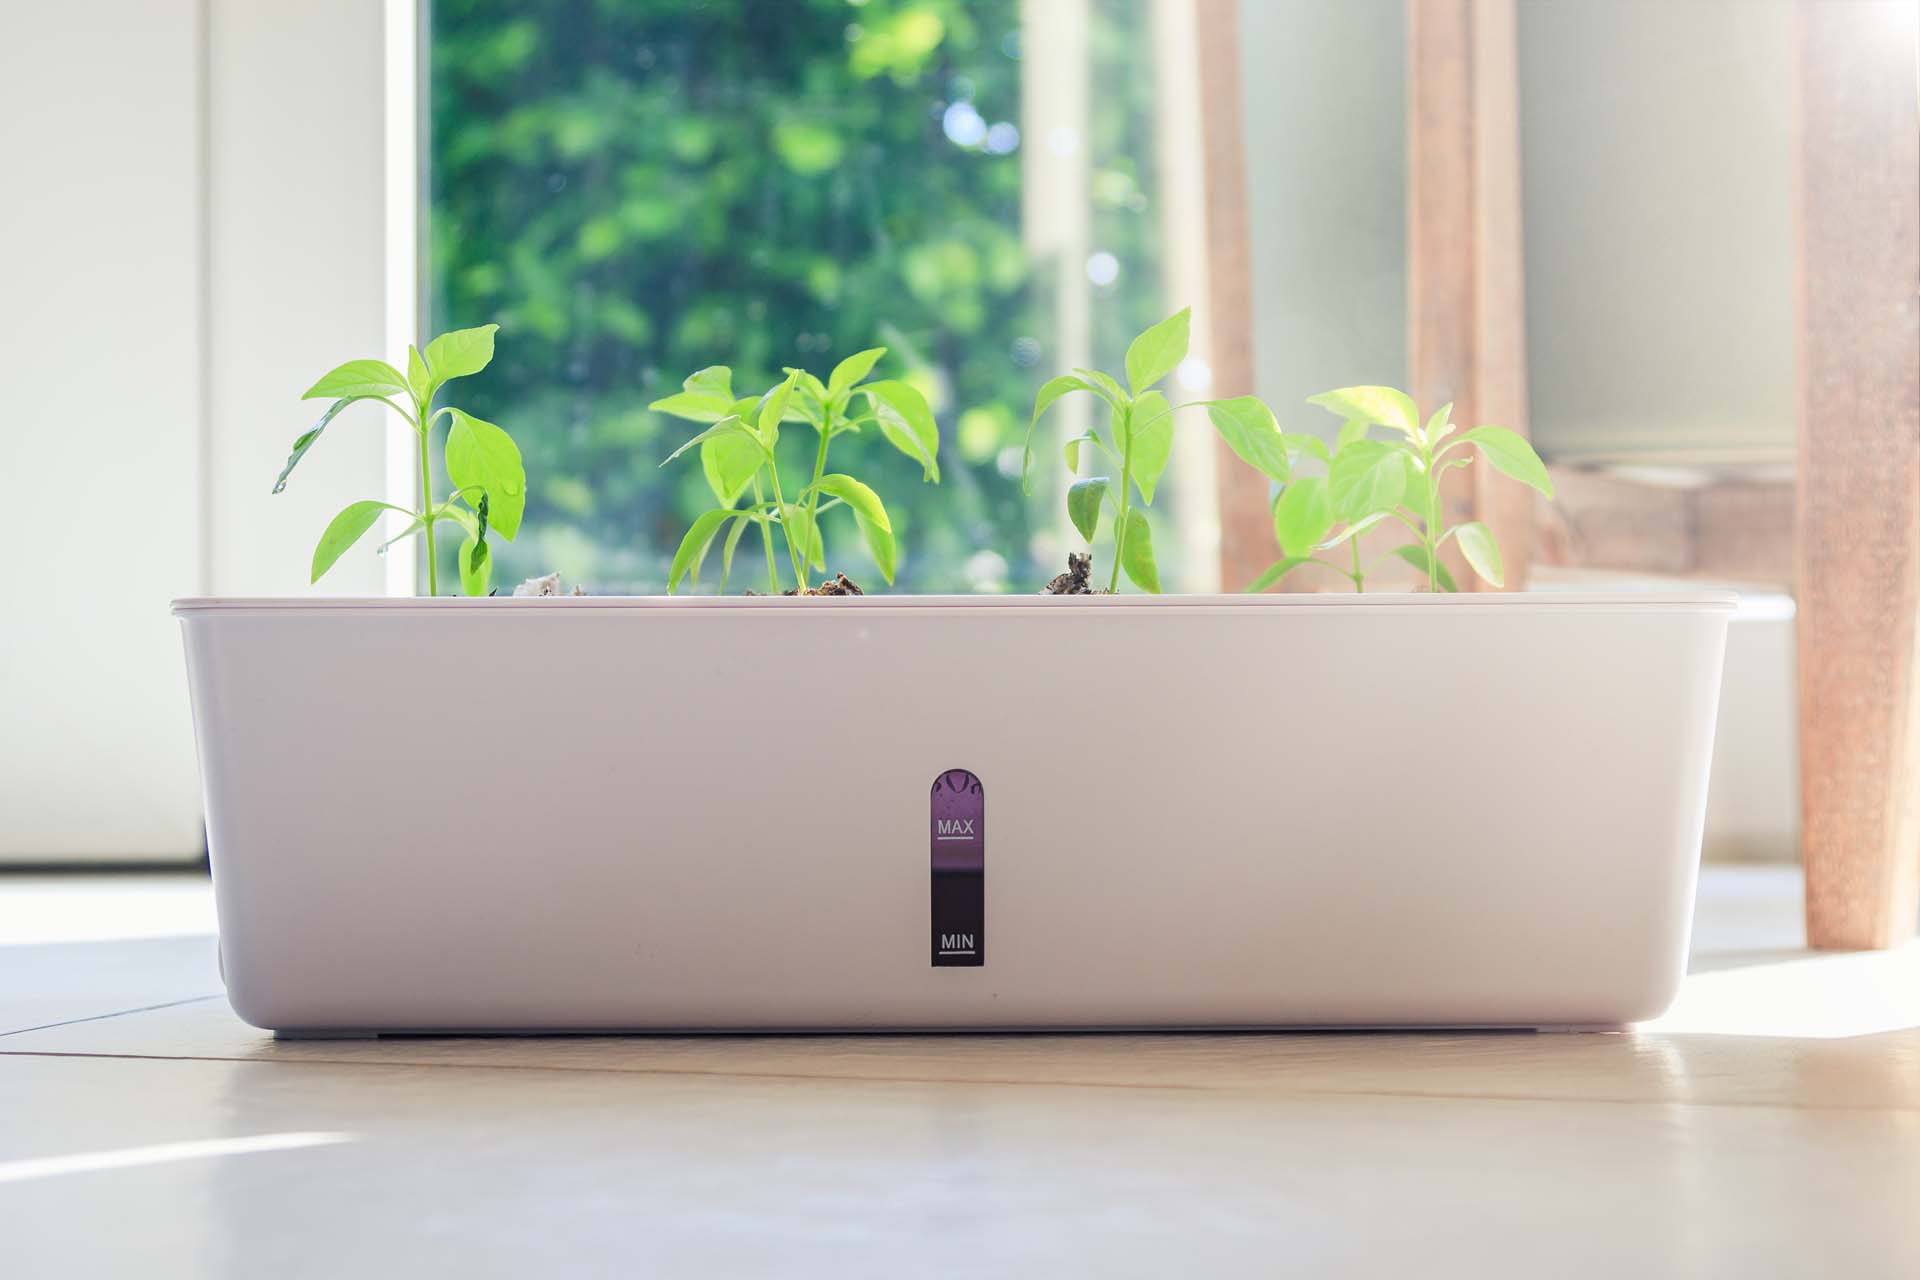 A self watering planter |  Shutterstock/dennispentek 